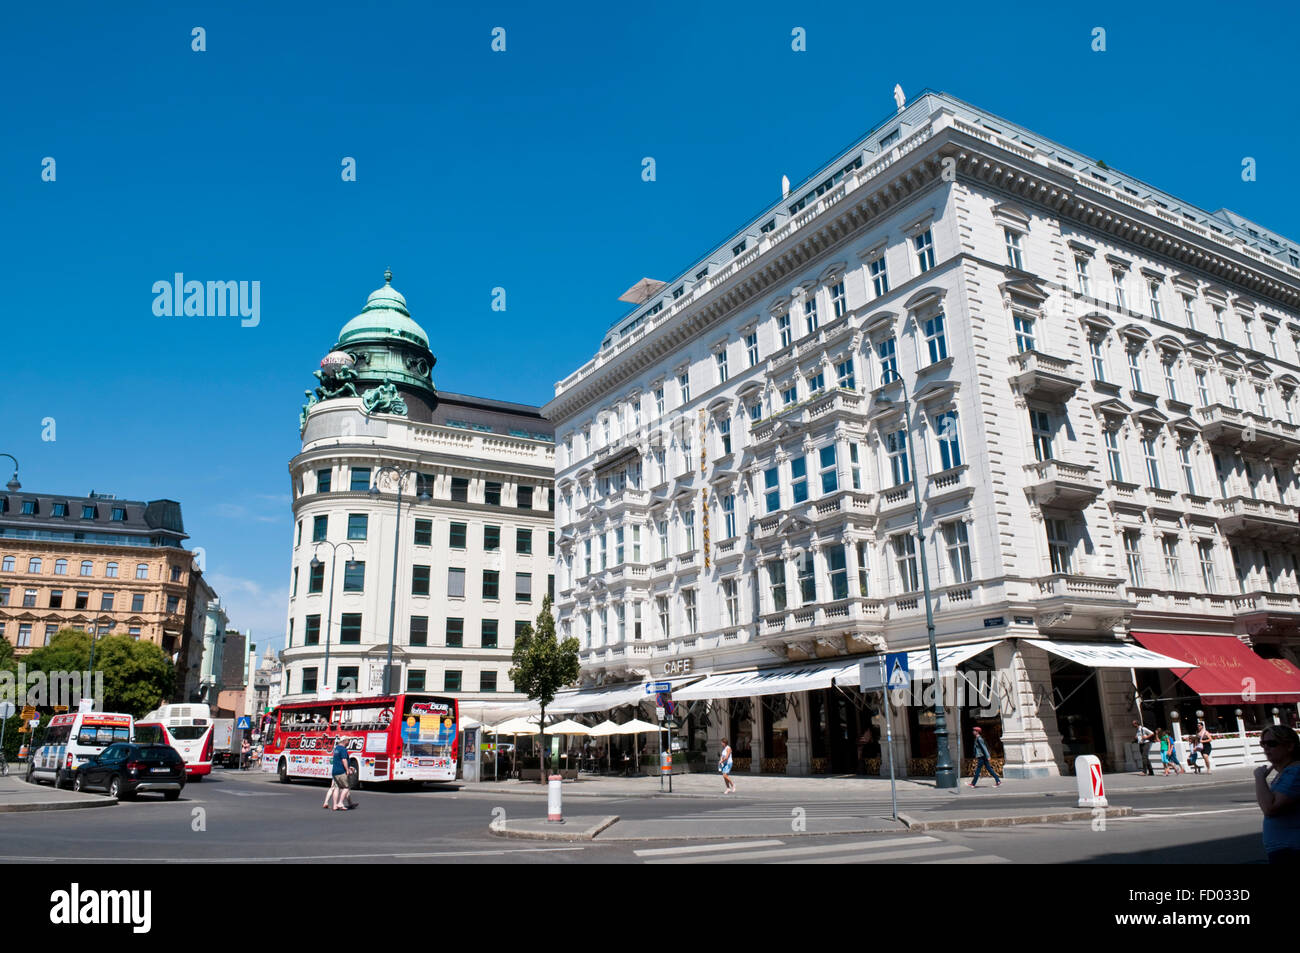 Vue sur Vienne Albertinaplatz, en vers le bâtiment de l'assurance Generali avec l'hôtel Sacher et Cafe Mozart sur le droit Banque D'Images